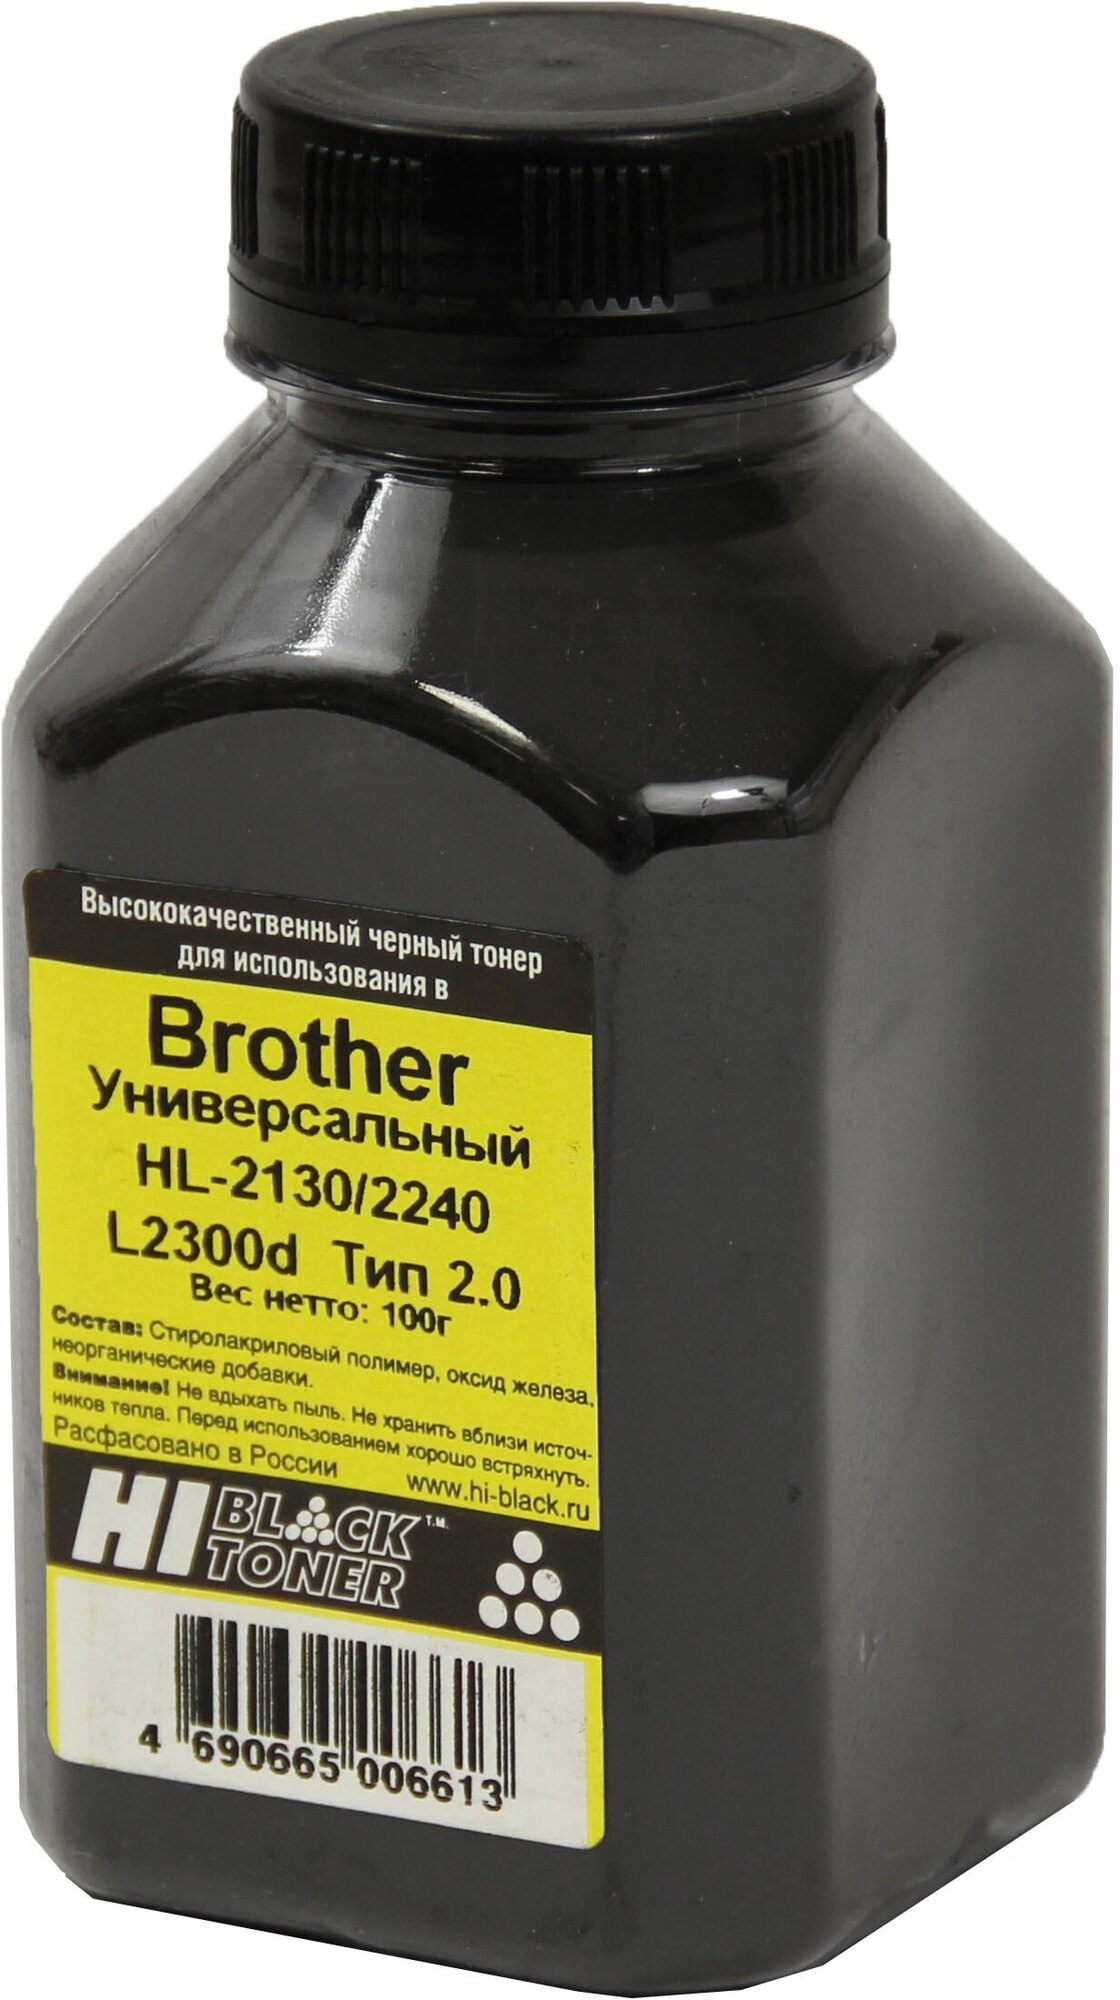 Тонер Hi-Black Универсальный для Brother HL-2130/2240/L2300d, Тип 2.0, Bk, 100 г, банка